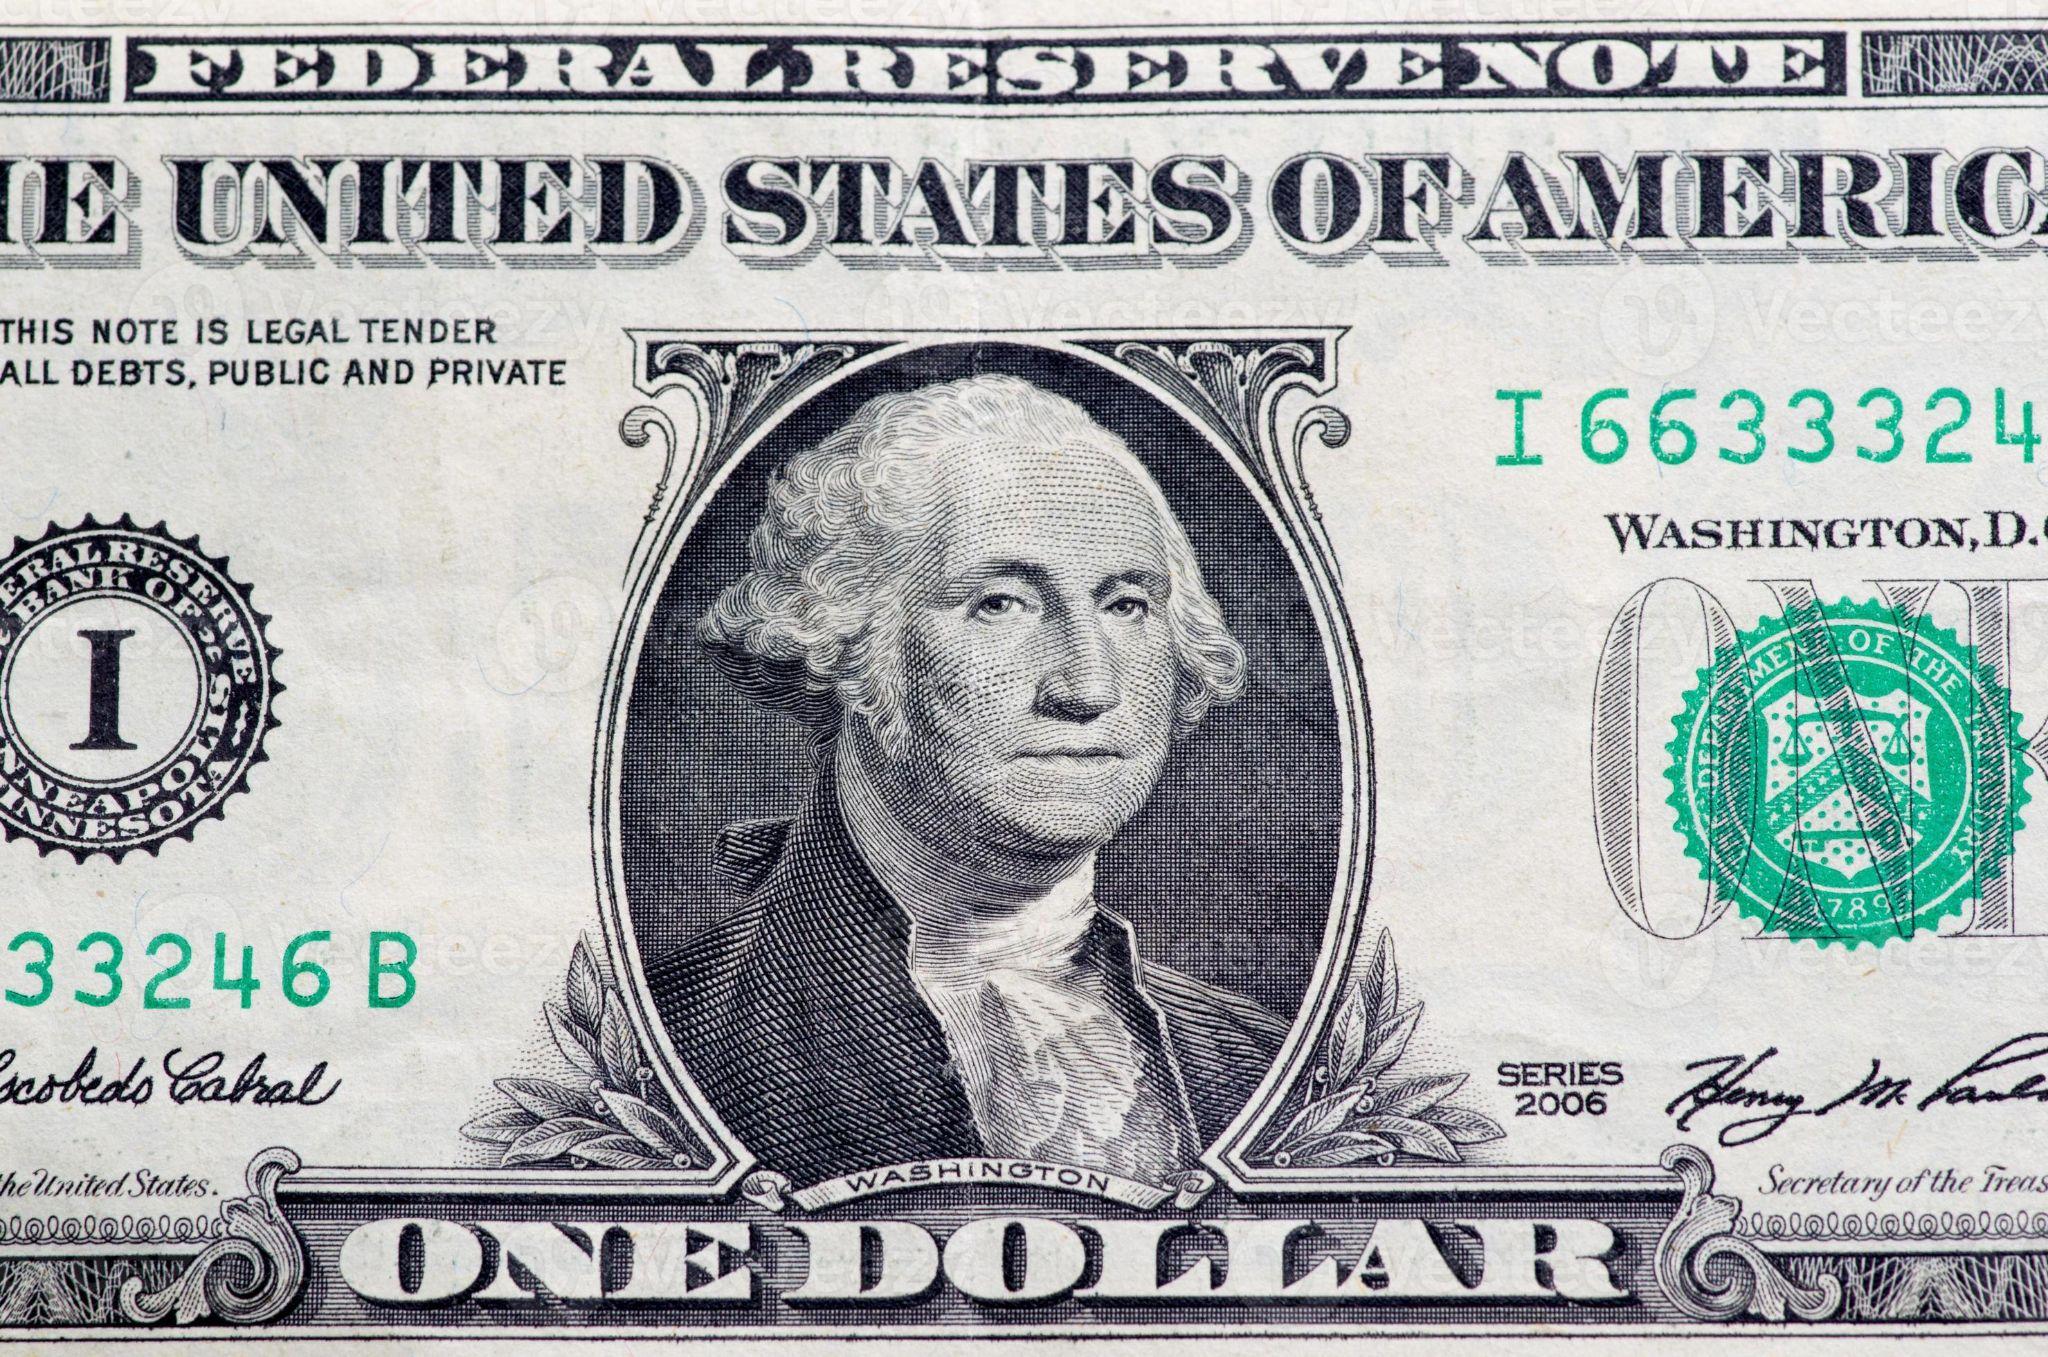 Hình ảnh của tổng thống George Washington được xuất hiện trên tem và đồng 1 đô la Mỹ.